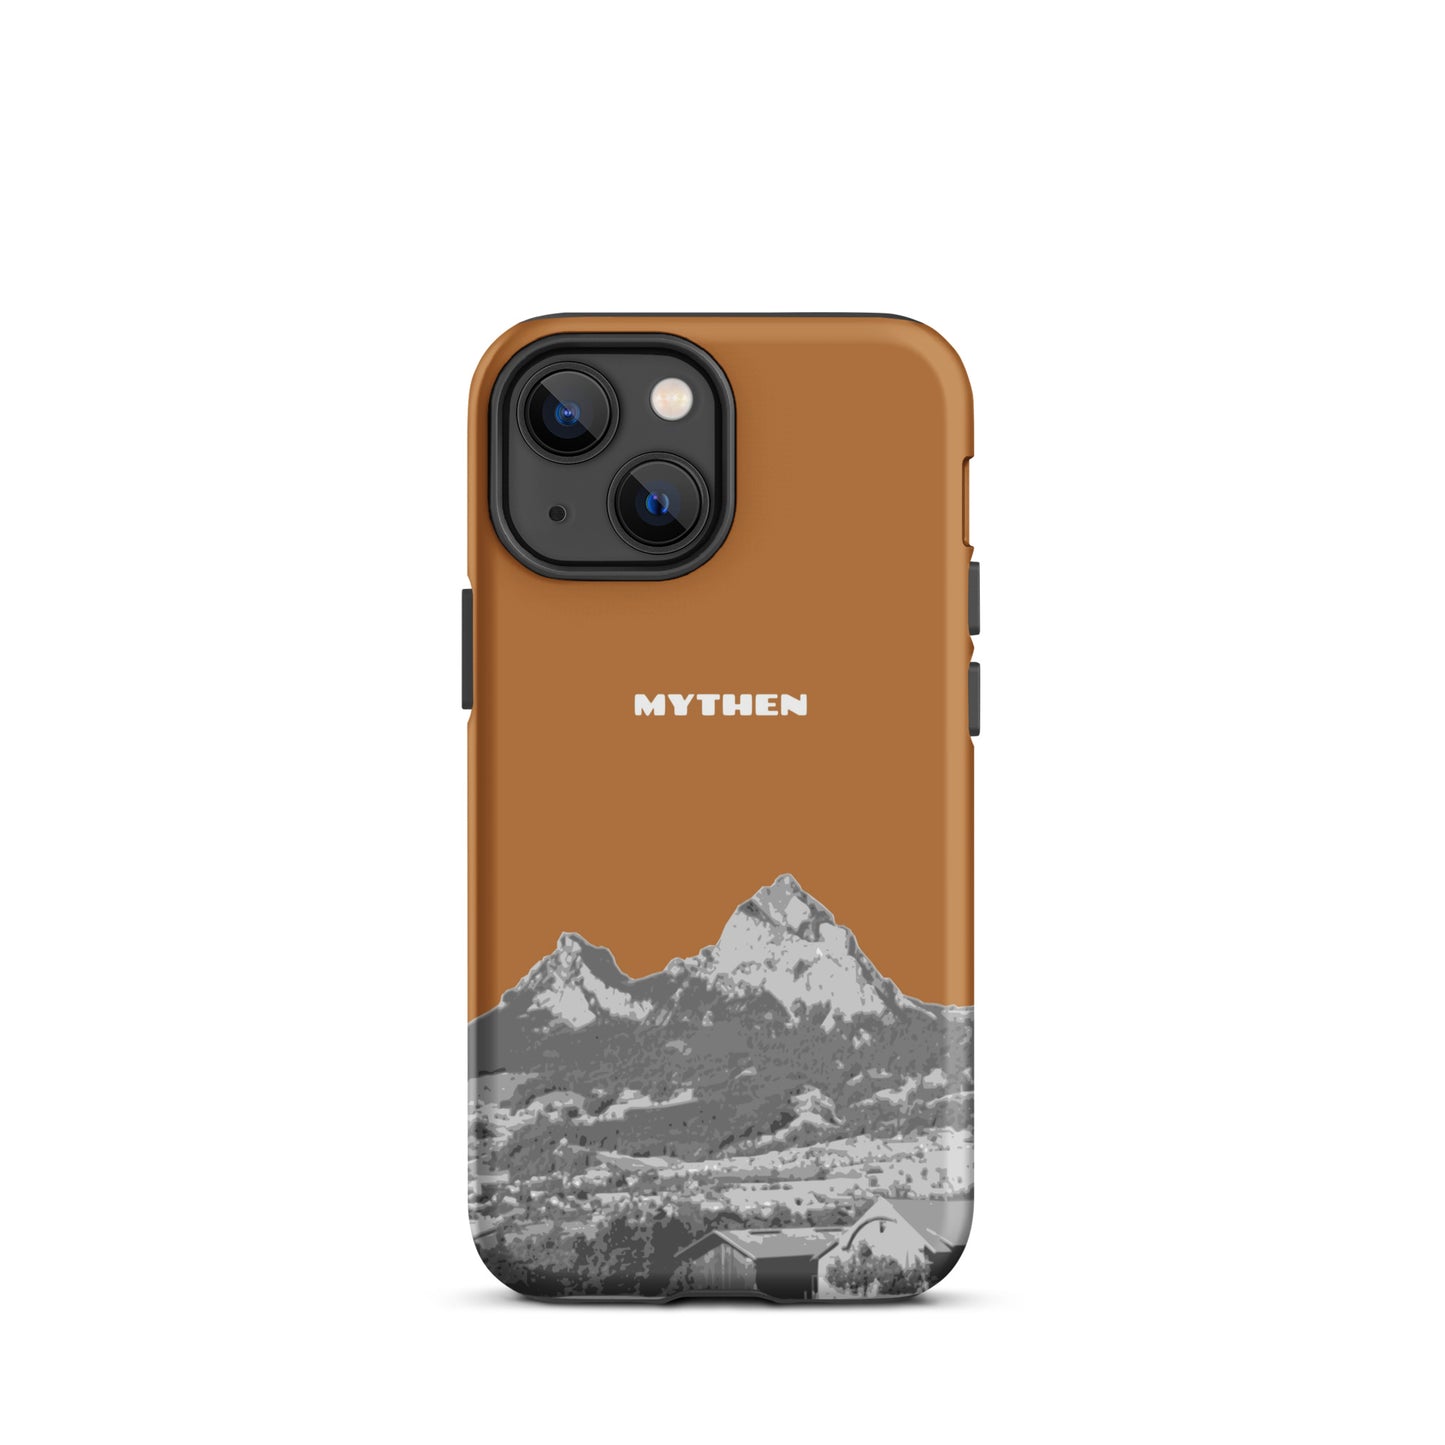 Hülle für das iPhone 13 mini von Apple in der Farbe Kupfer, dass den Grossen Mythen und den Kleinen Mythen bei Schwyz zeigt. 